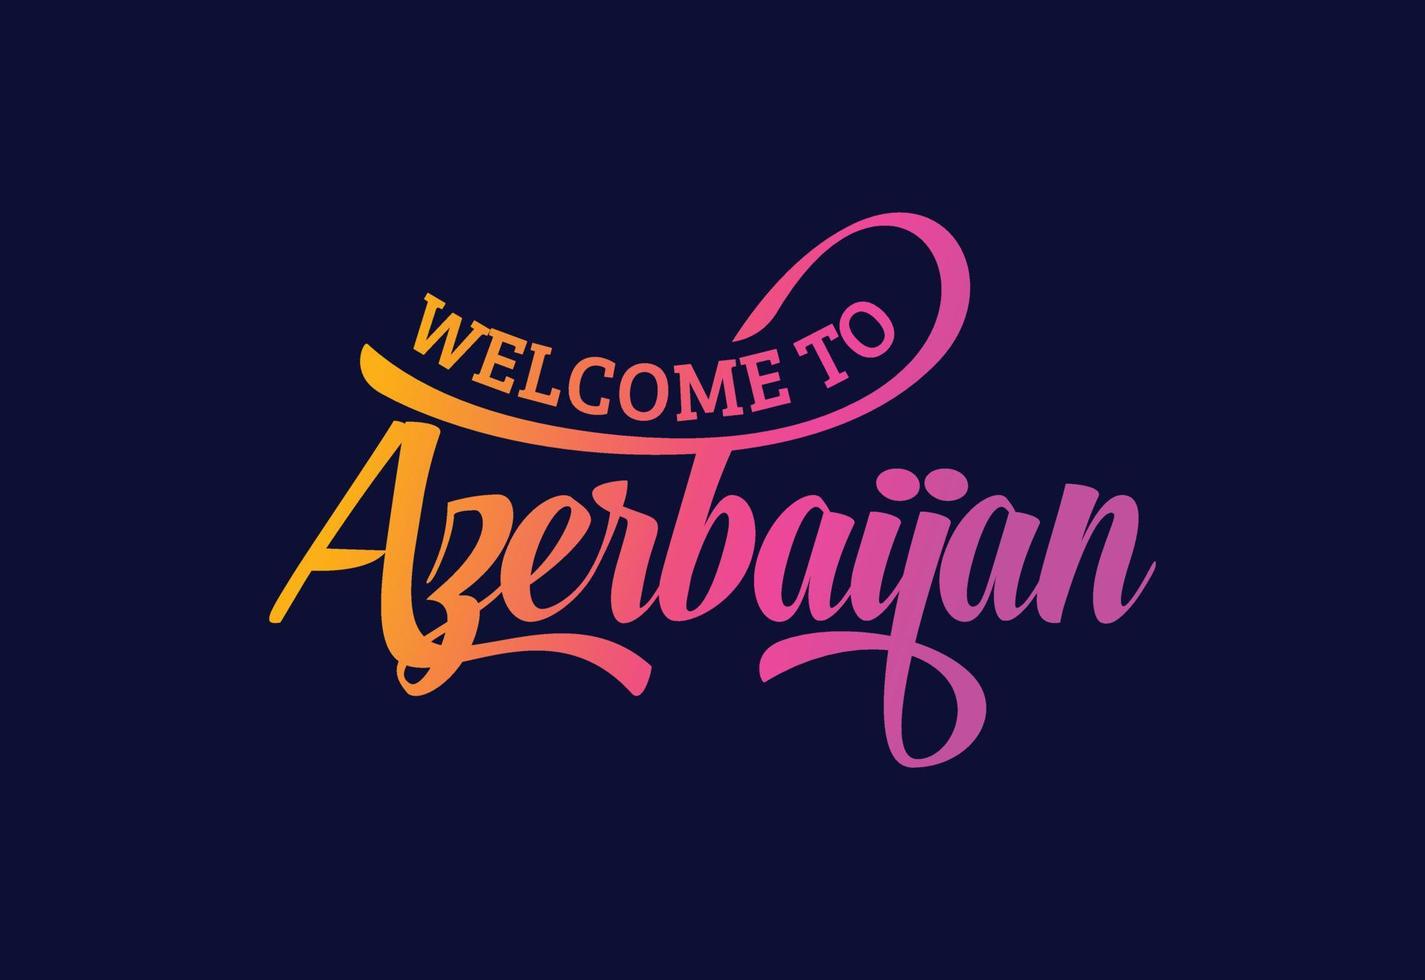 willkommen in aserbaidschan worttext kreative schriftdesignillustration. Willkommensschild vektor